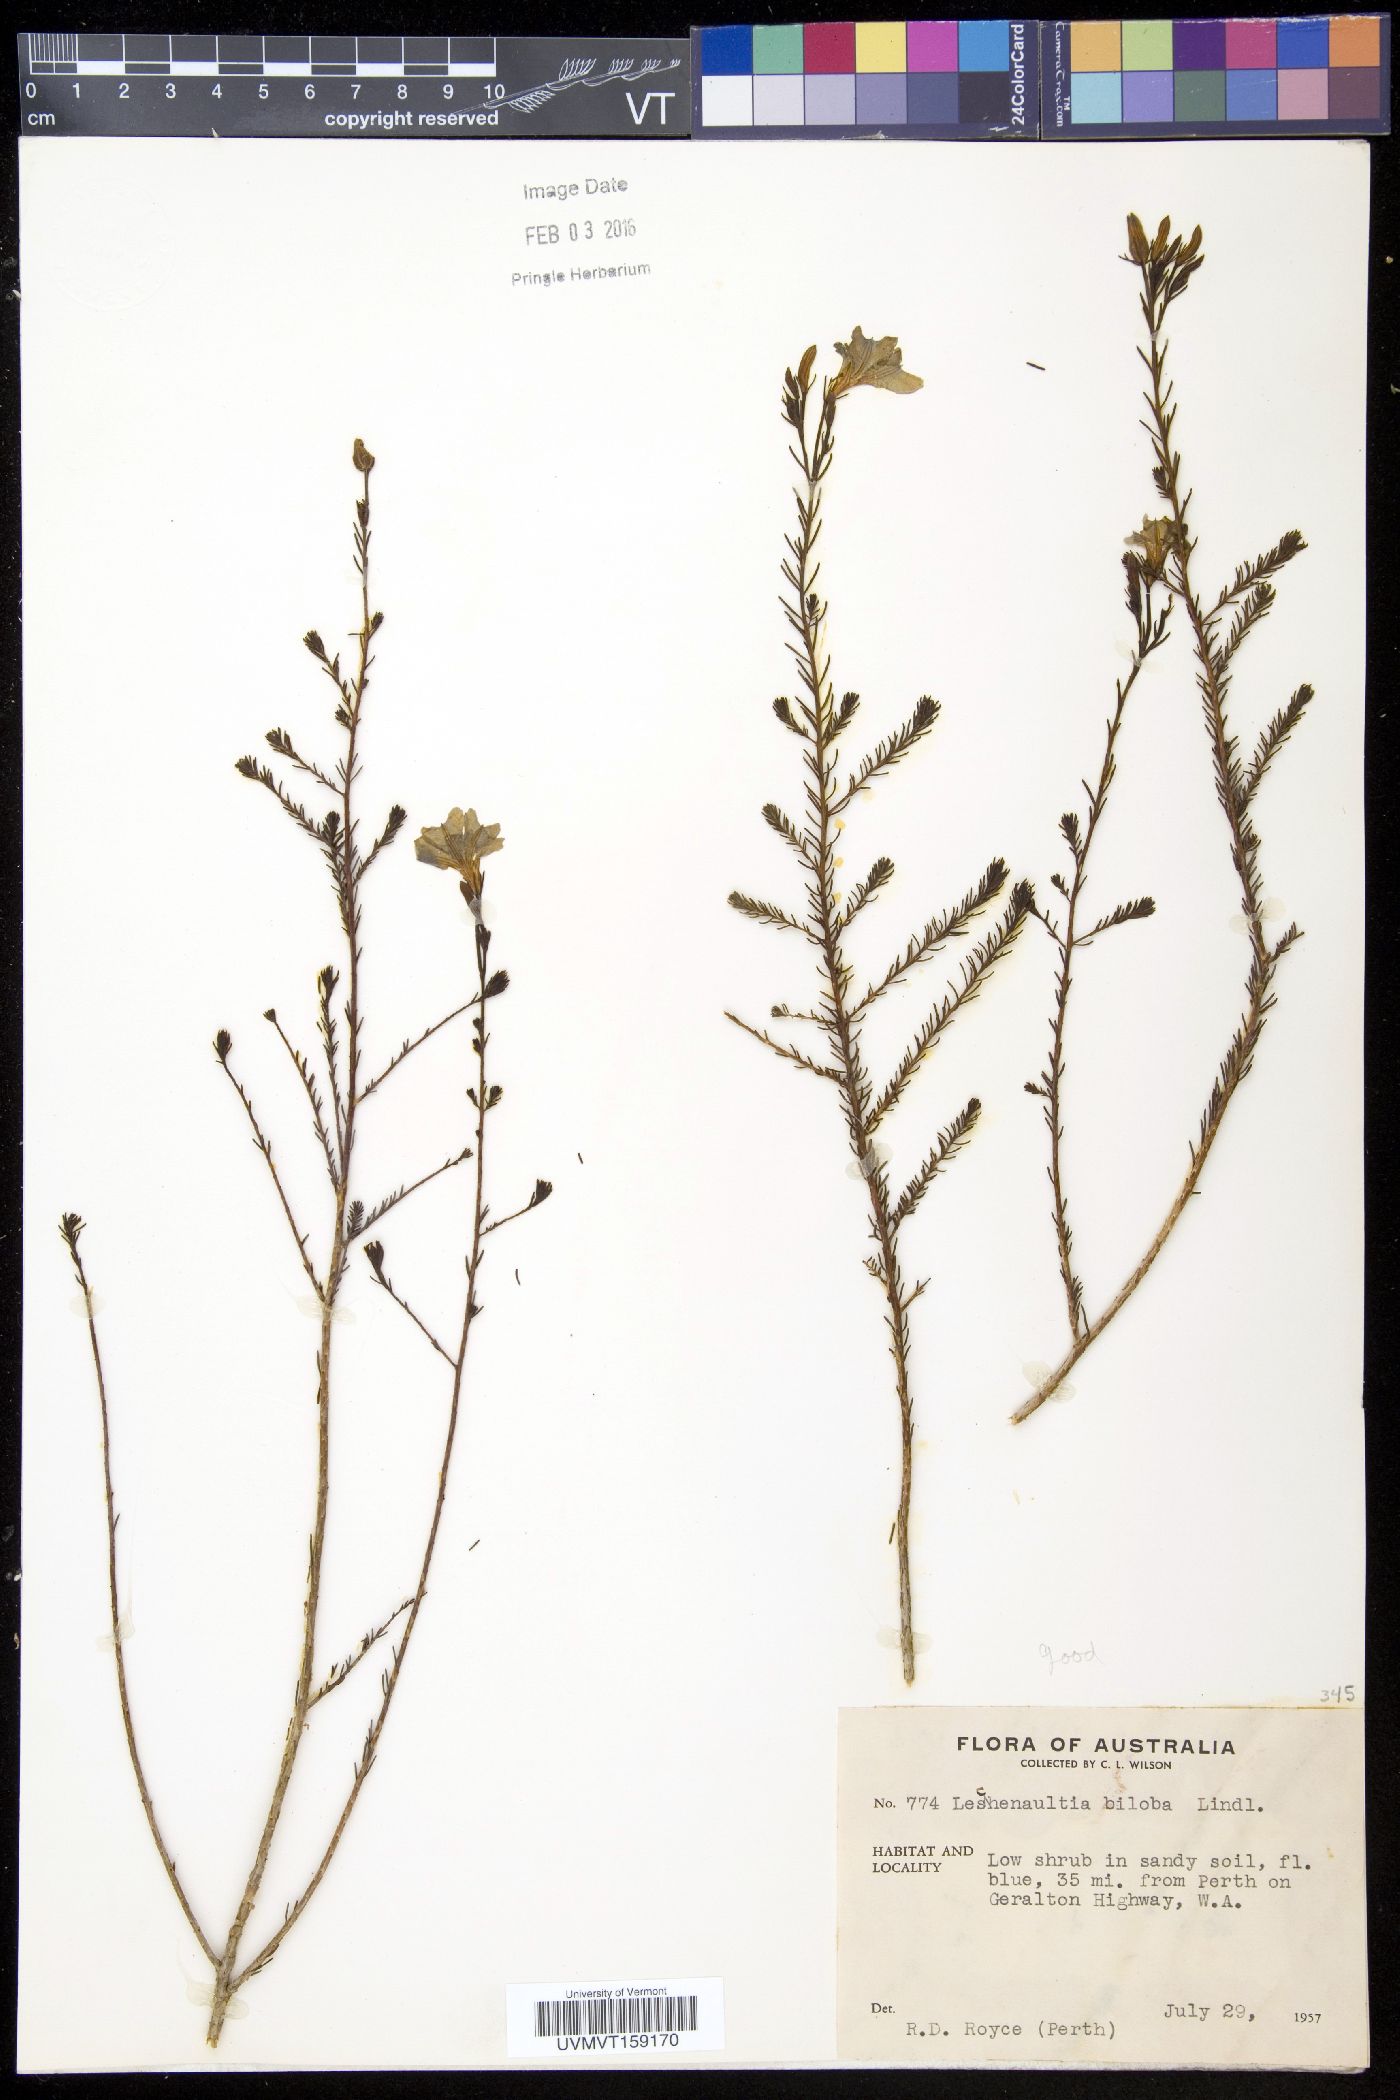 Leschenaultia image